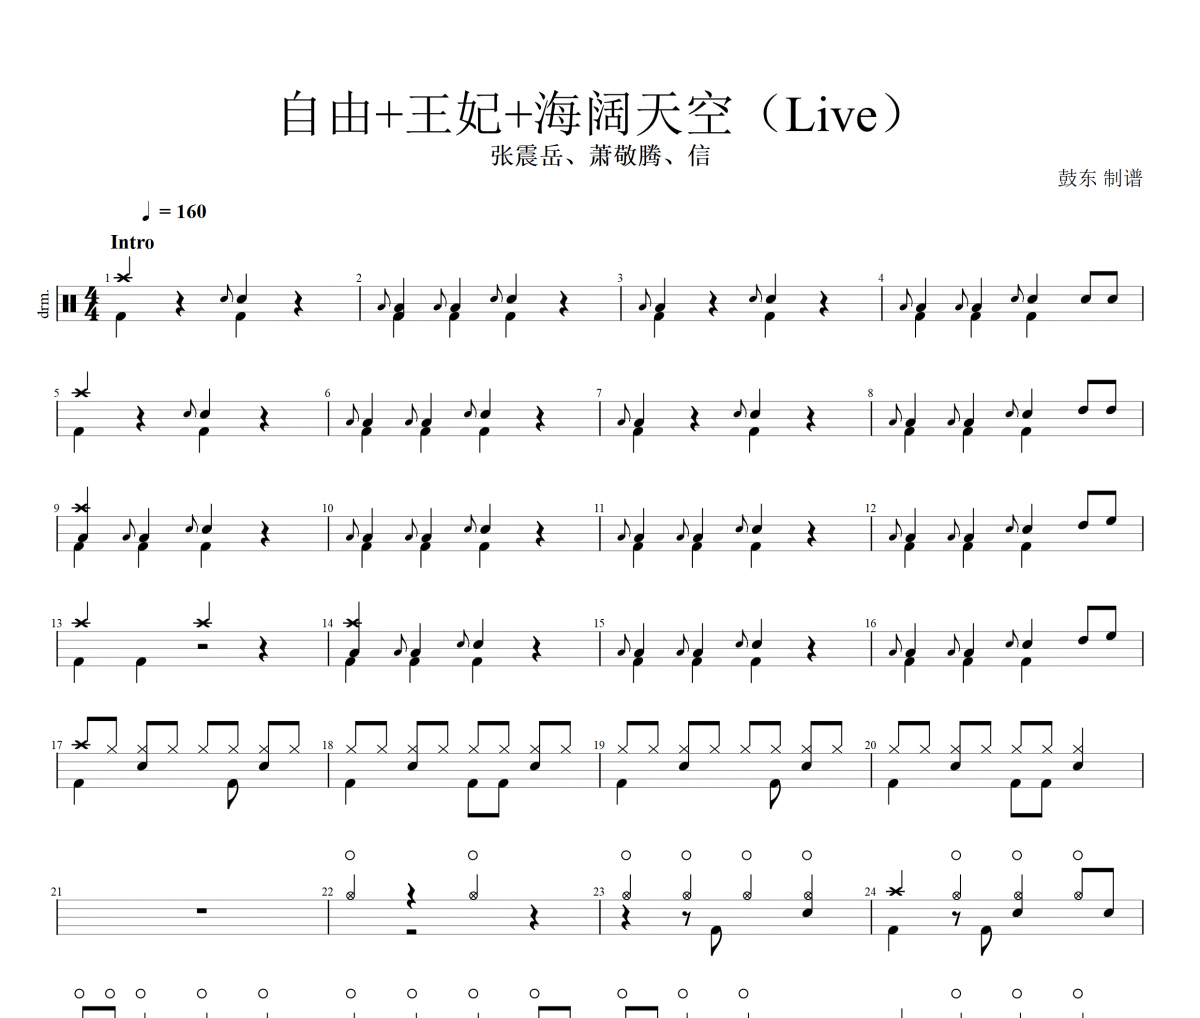 张震岳/萧敬腾/信-自由+王妃+海阔天空（Live）架子鼓谱爵士鼓曲谱